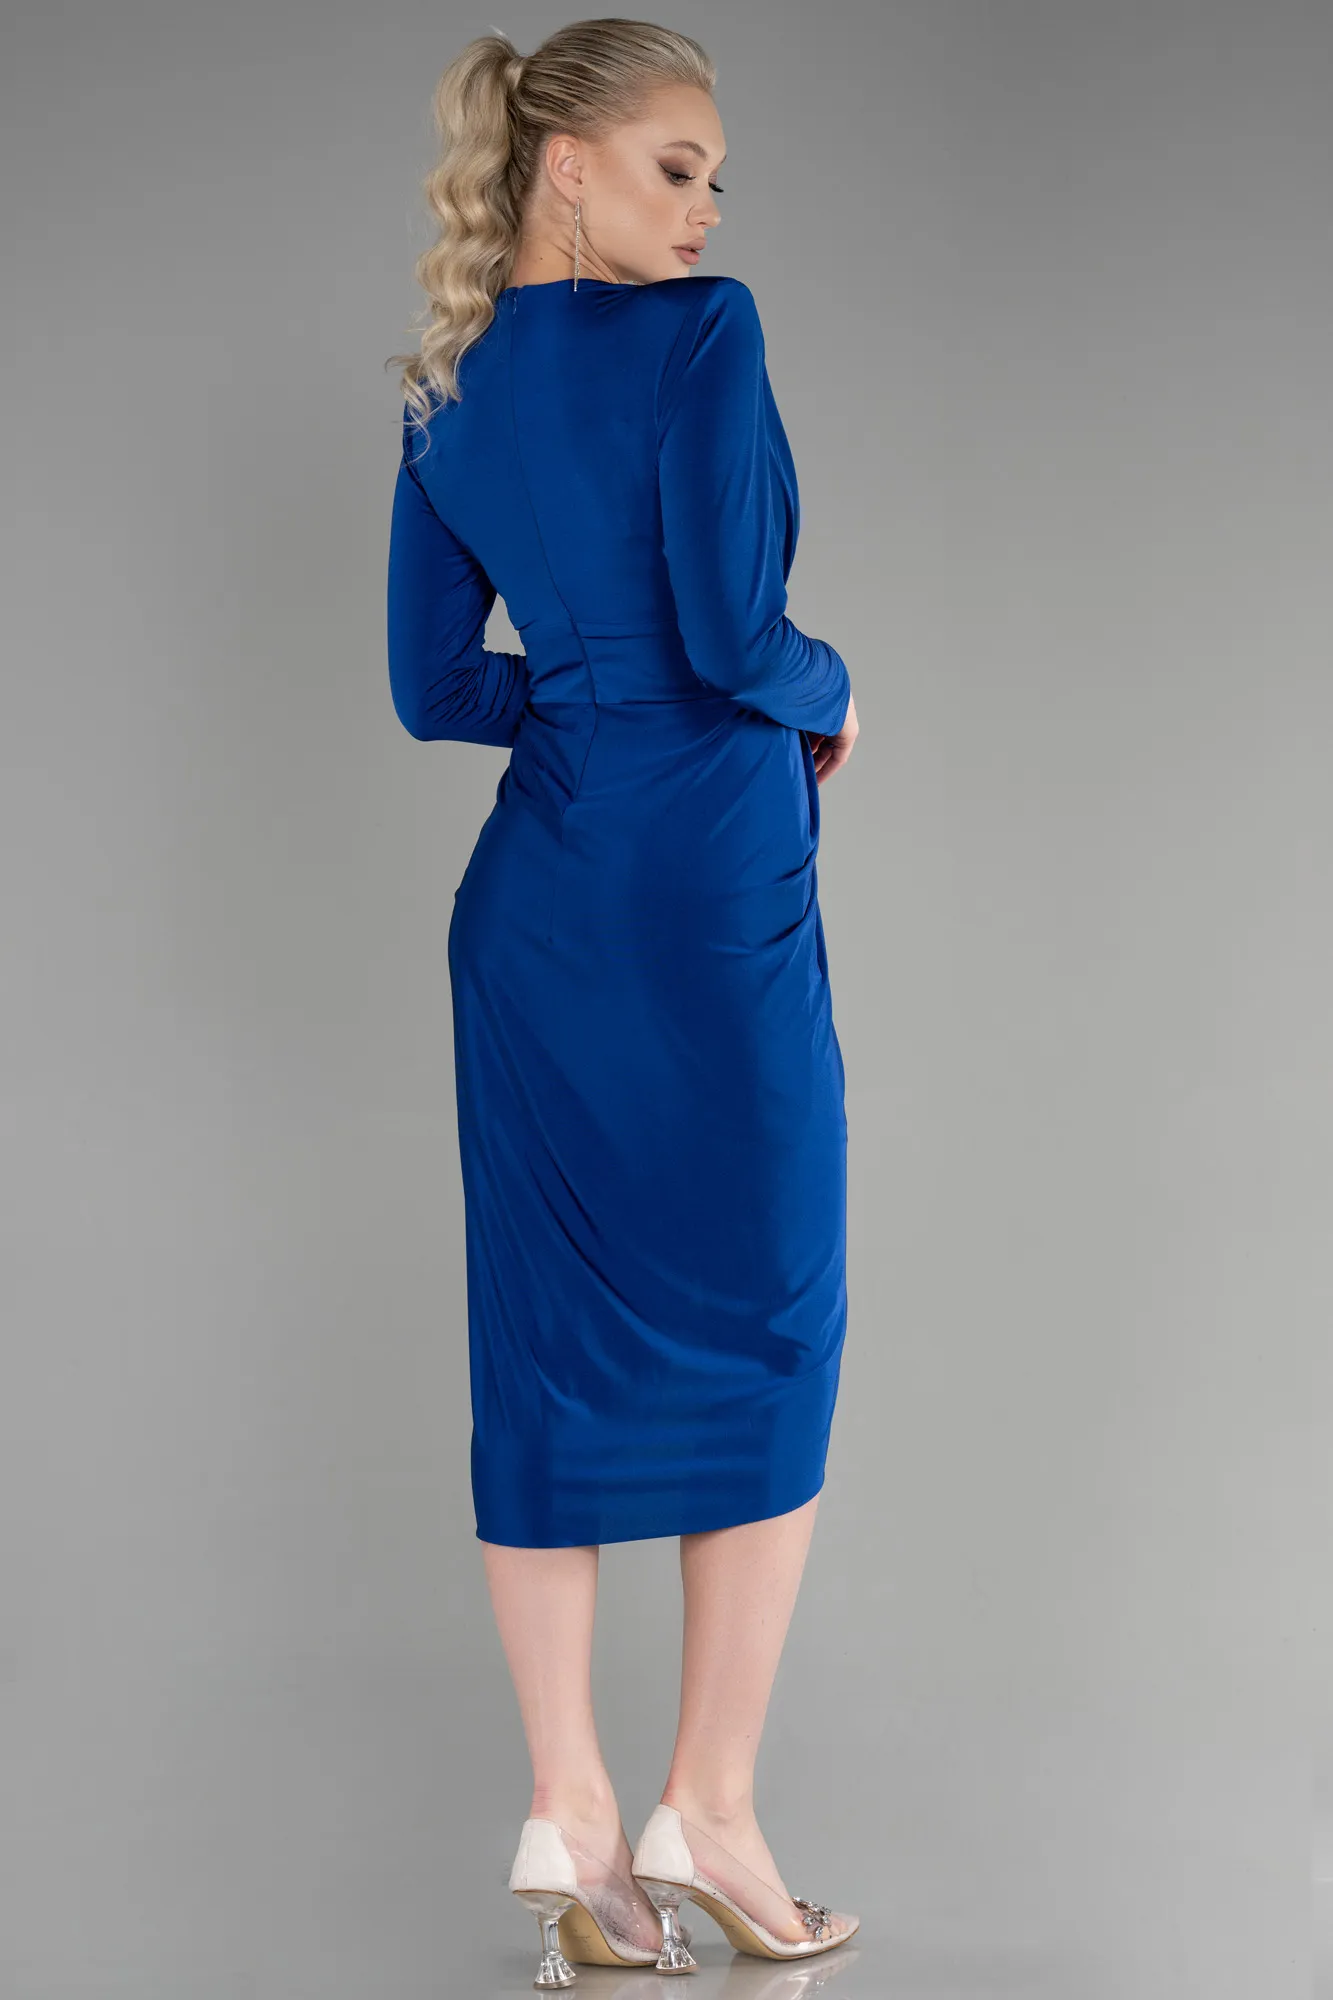 Sax Blue-Midi Invitation Dress ABK1861